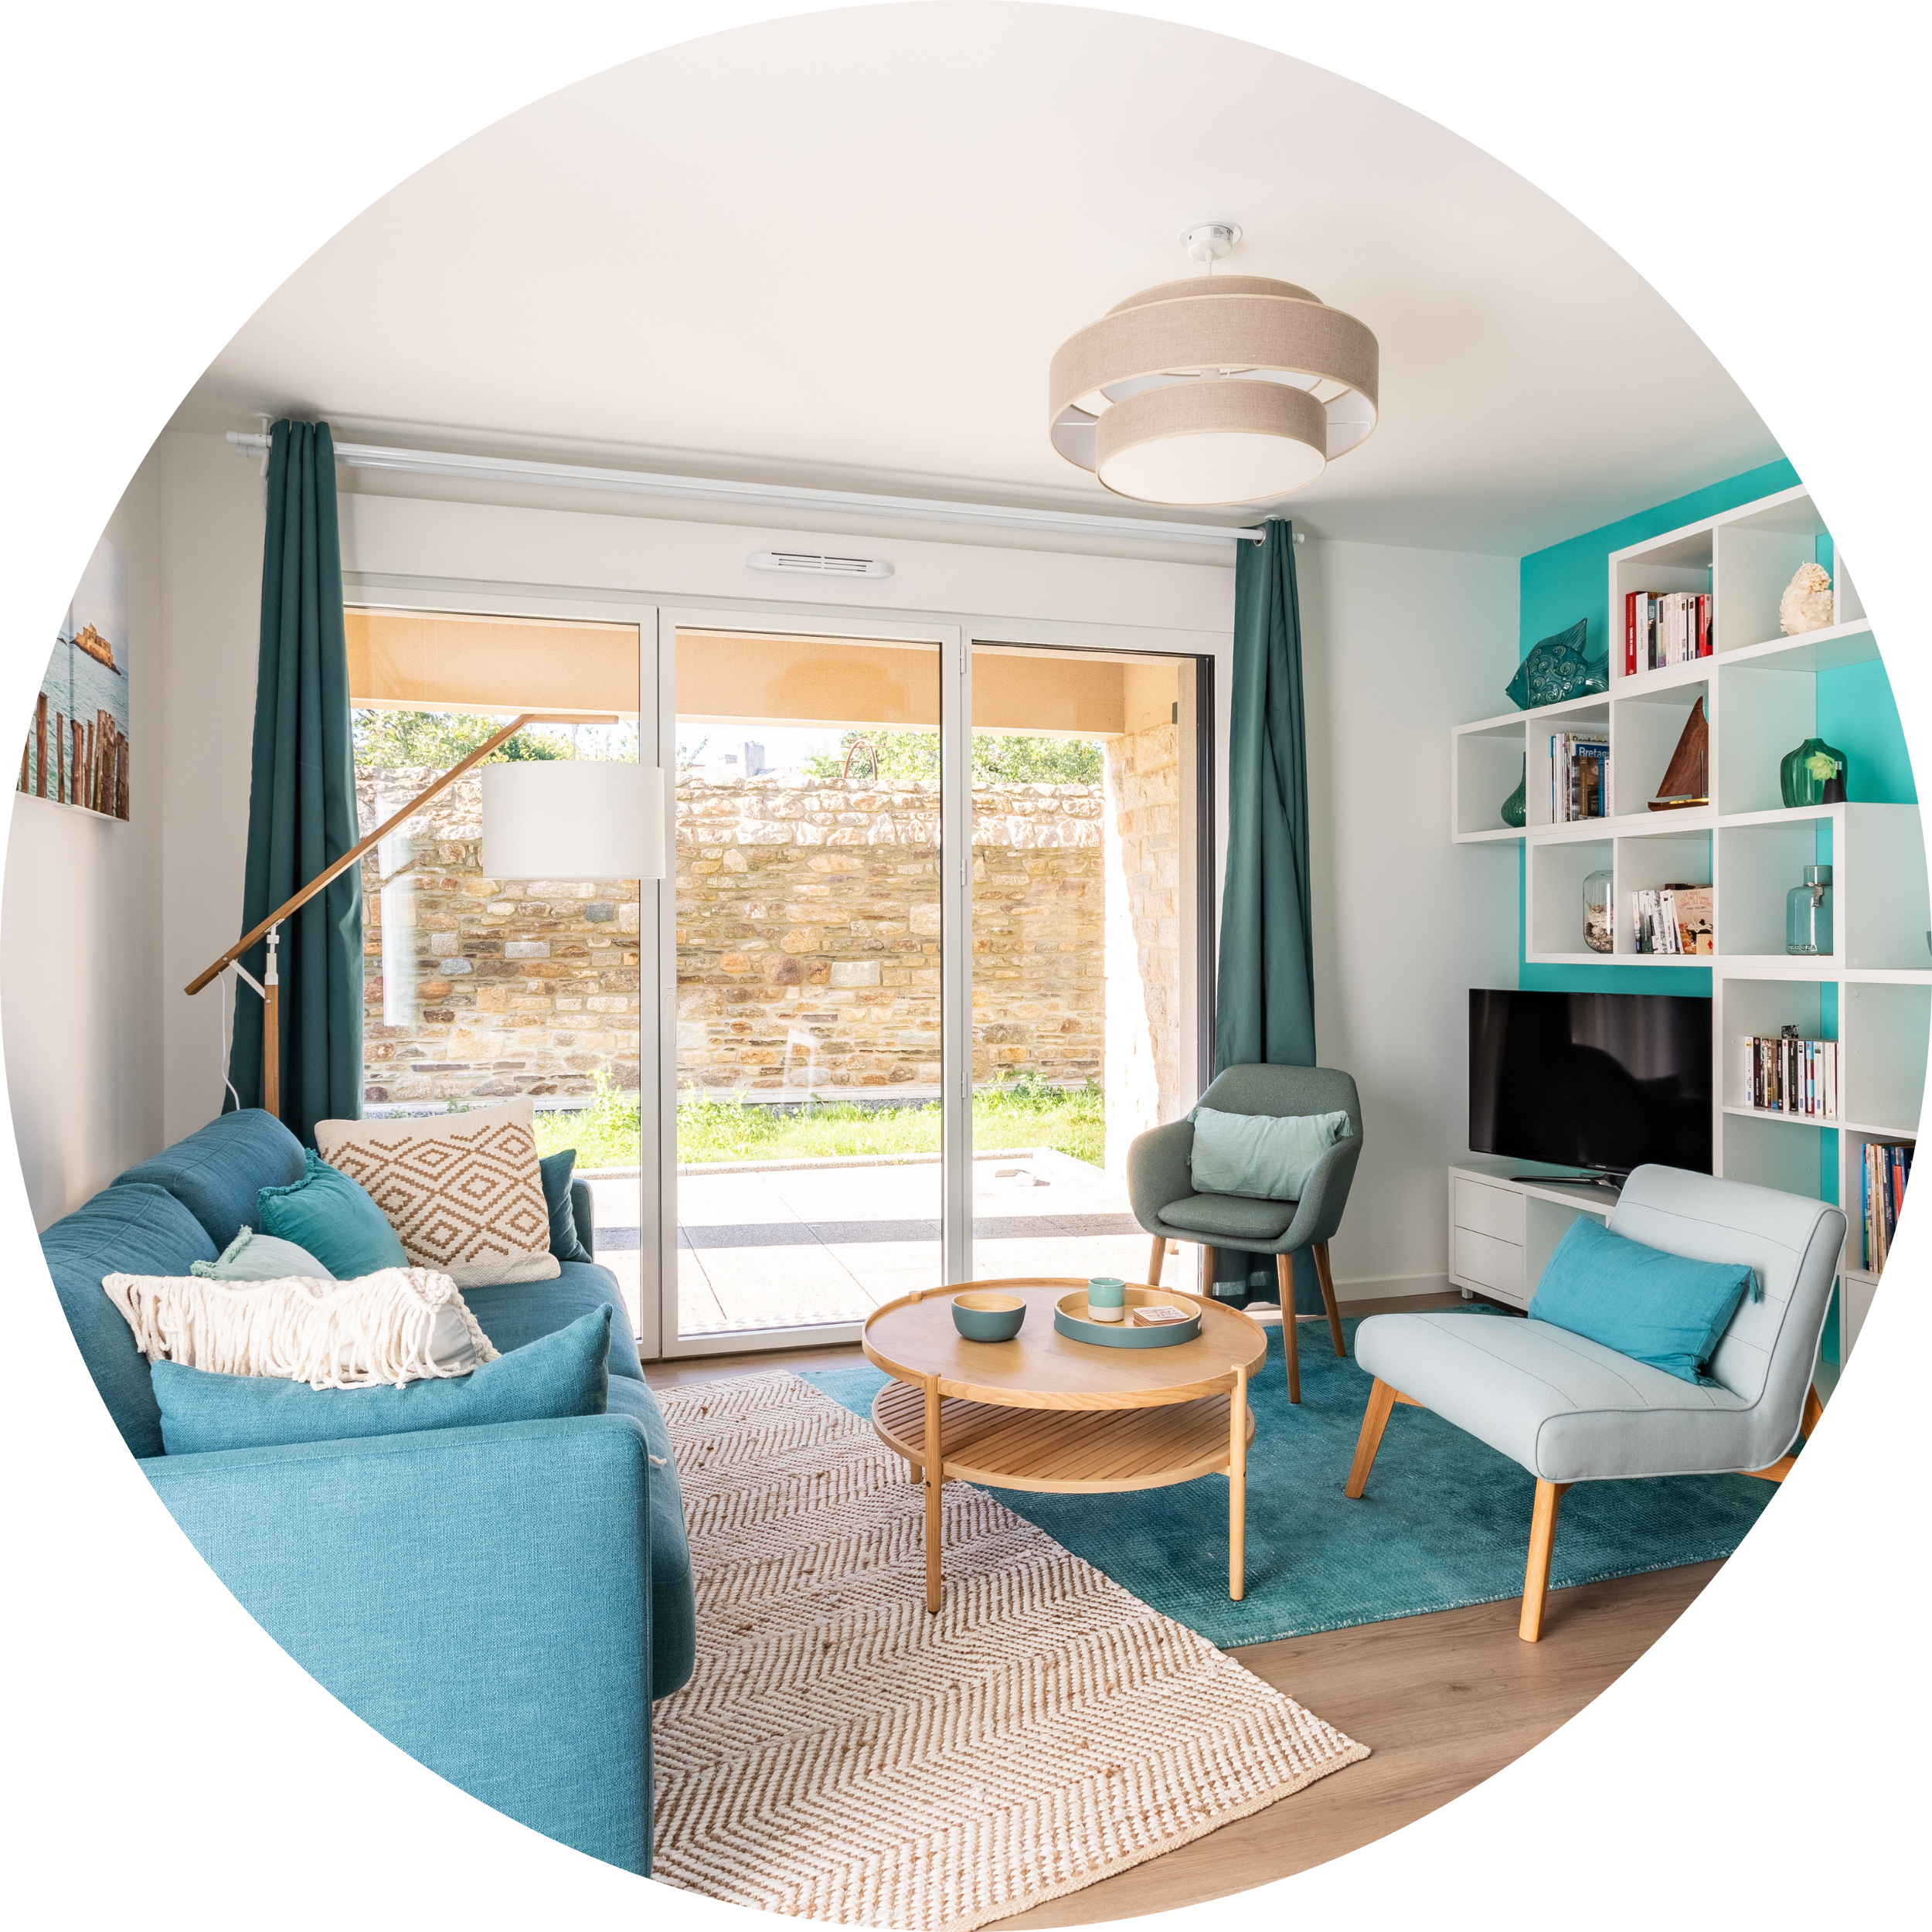 Conciergerie Cancale : Gestion logement airbnb et booking.com